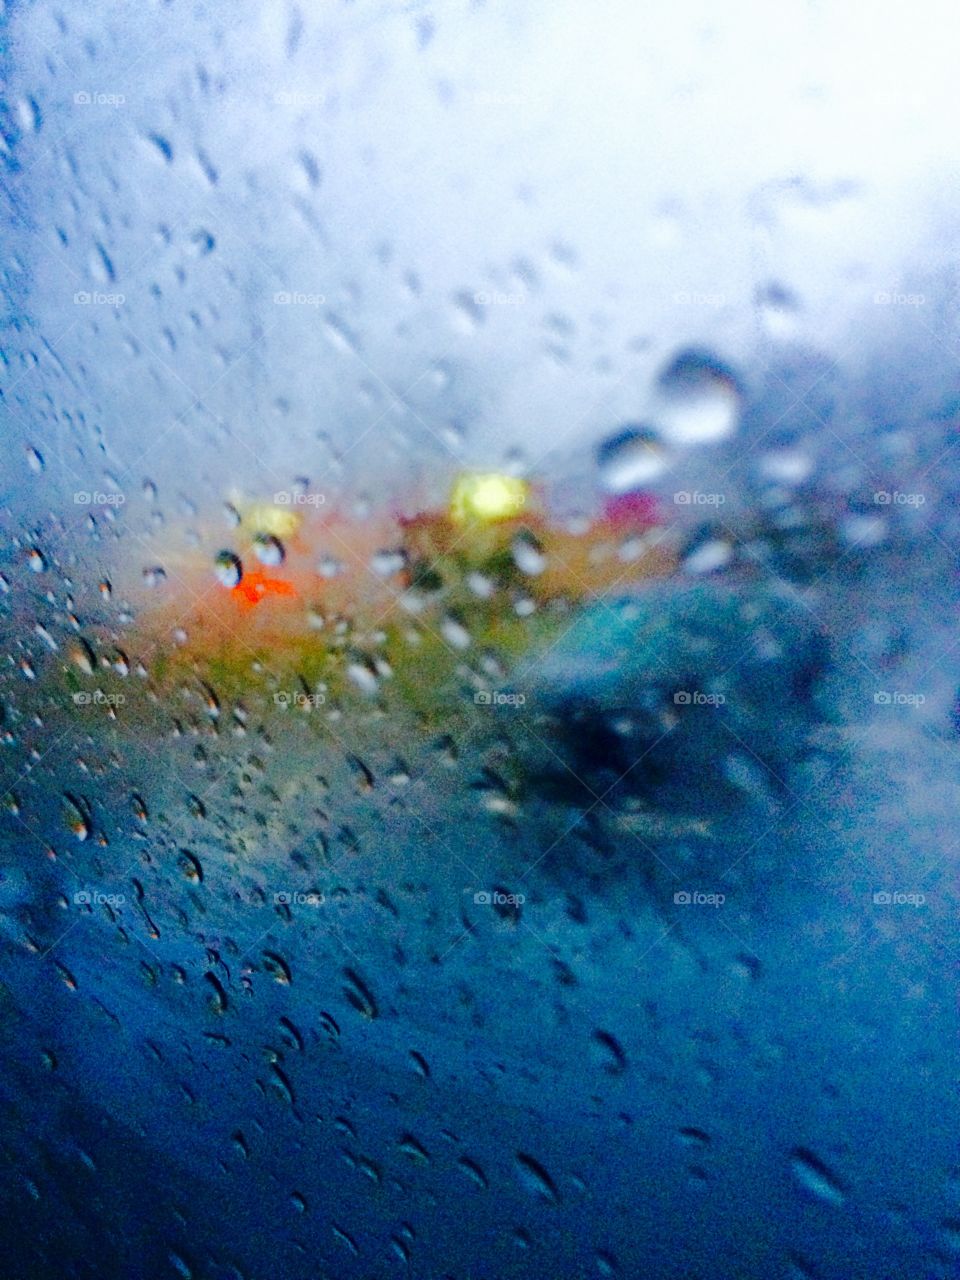 Rain glass